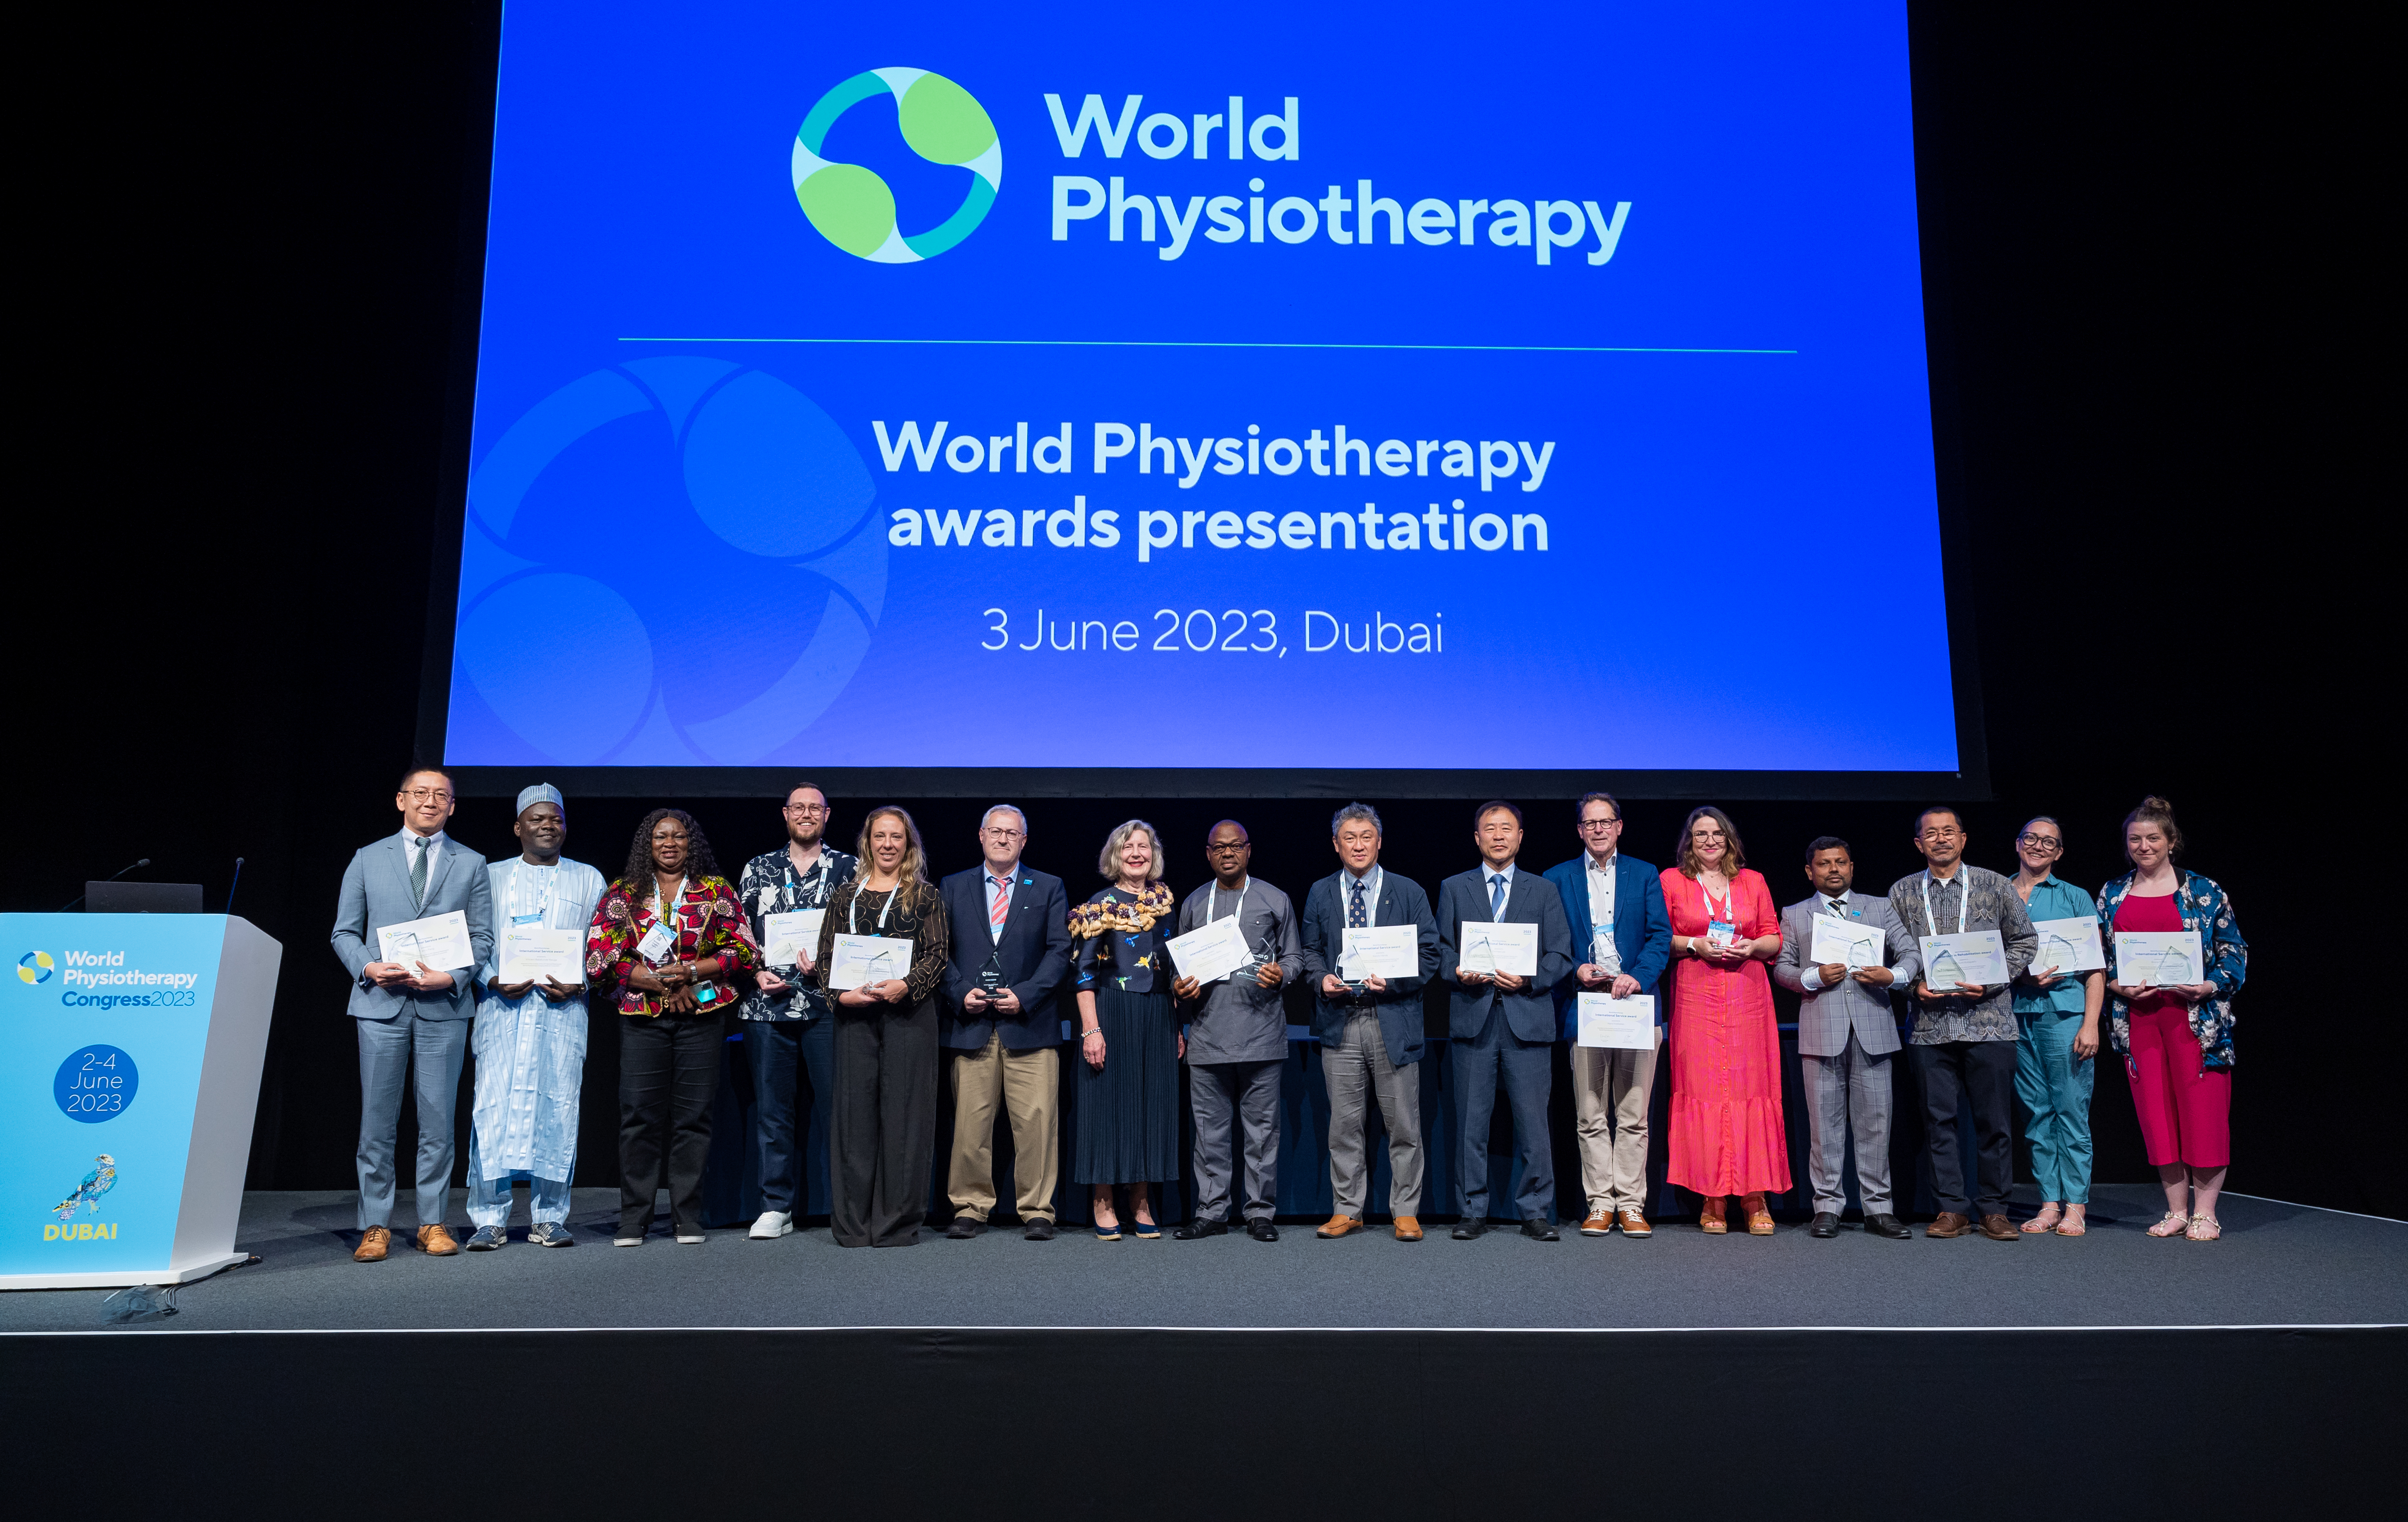 Preisträger bei der Verleihung der World Physiotherapy Awards